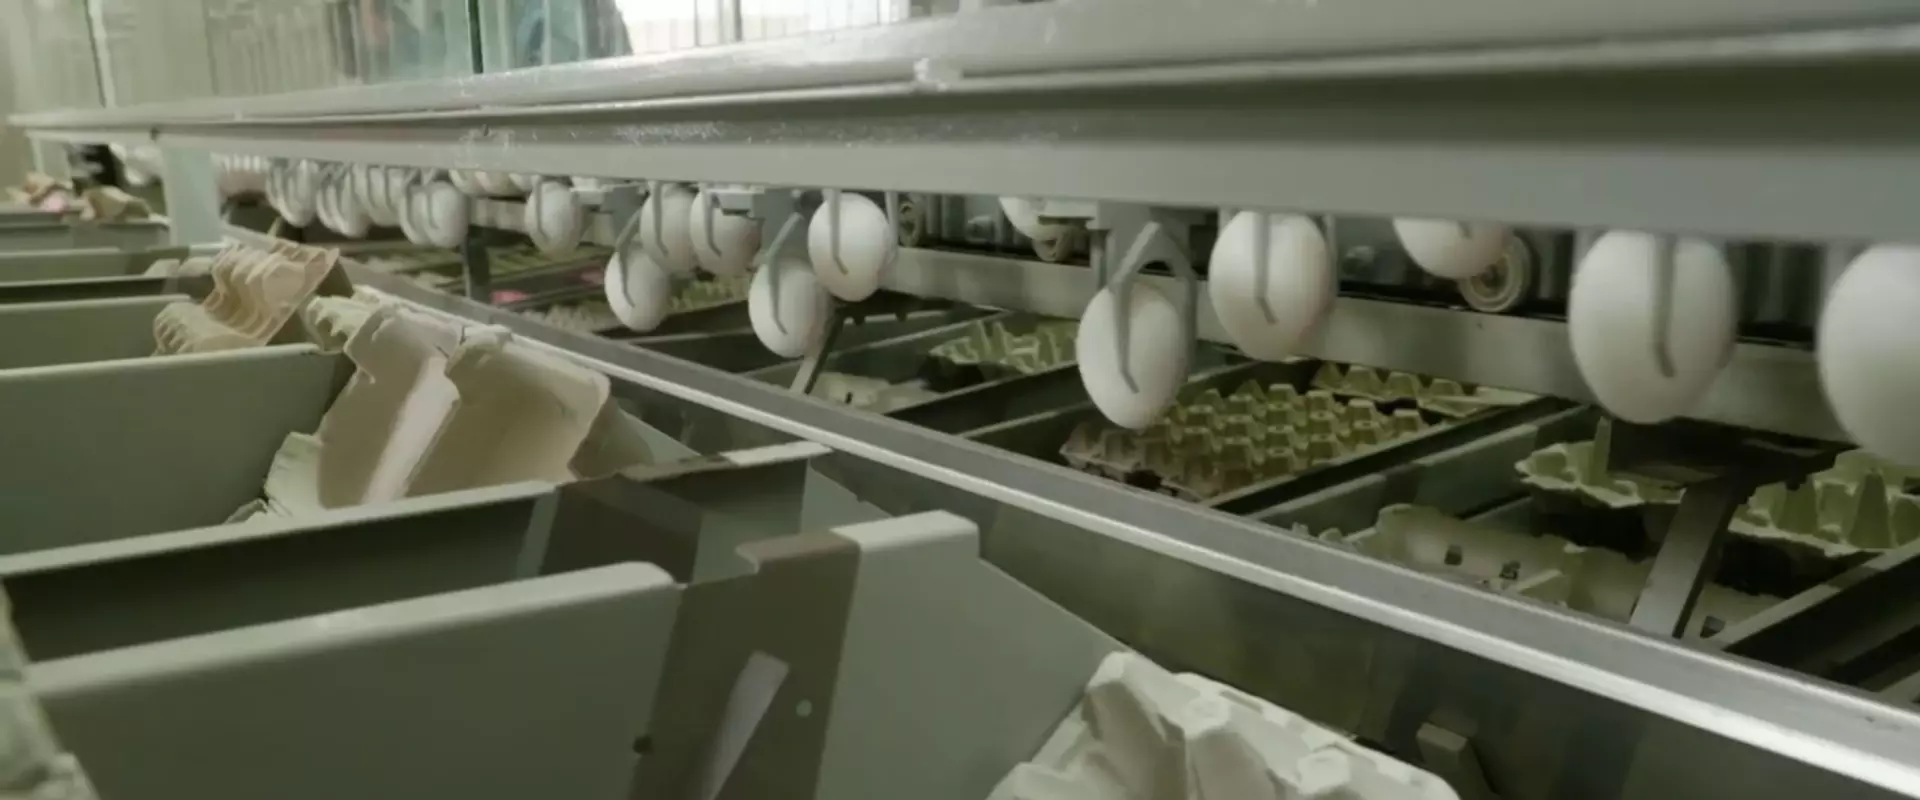 Los huevos siendo transportados a la zona de empaque